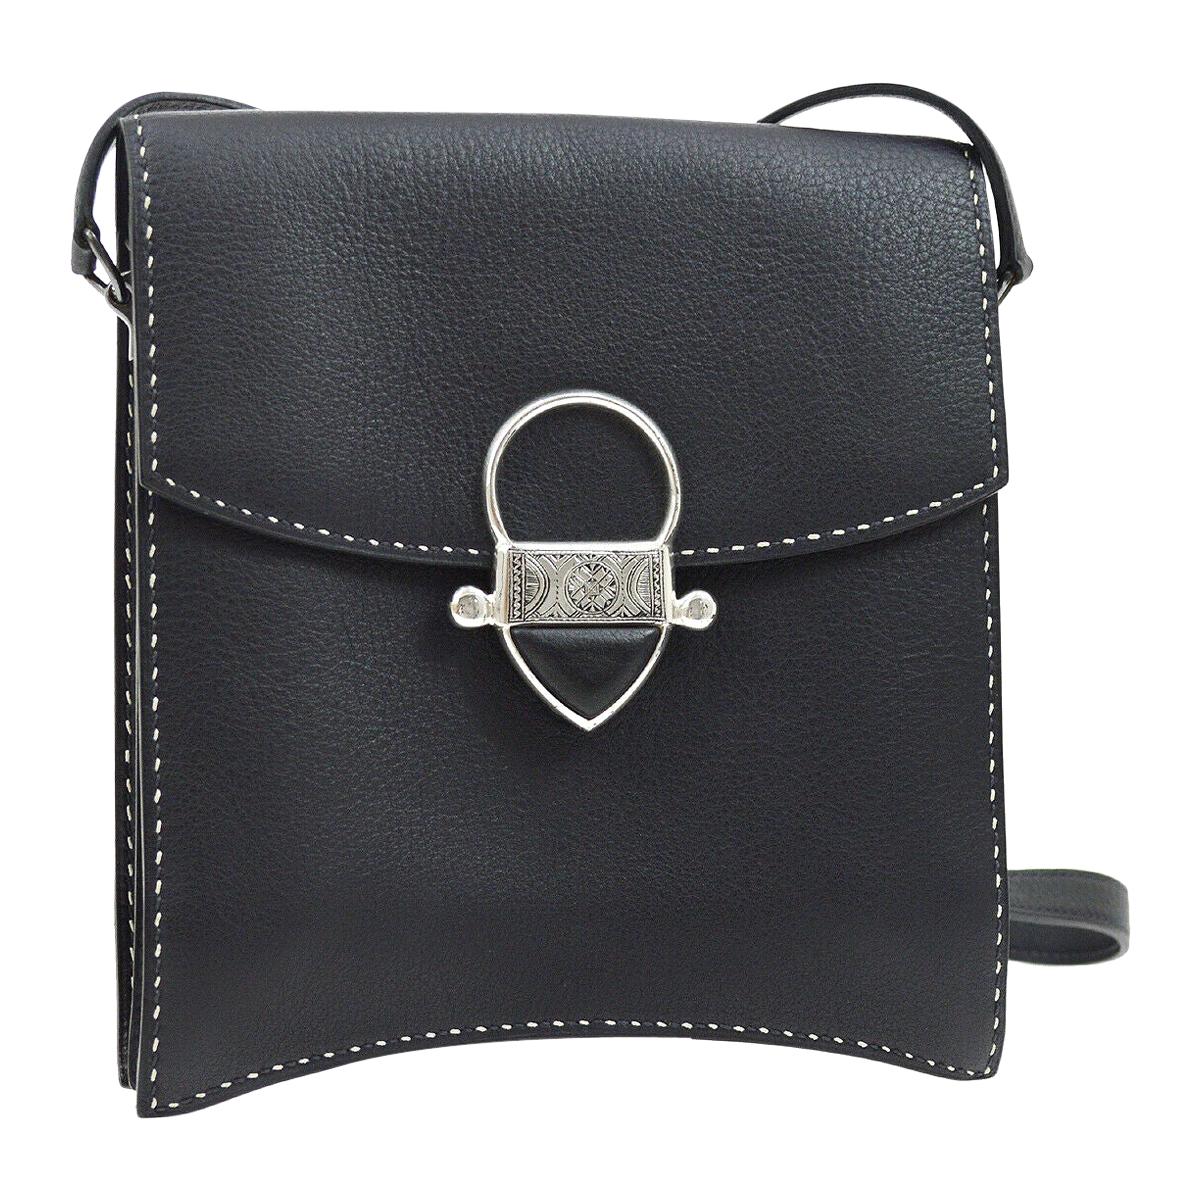 Hermes Black Leather Silver Emblem Flat Carryall Travel Shoulder Flap Bag